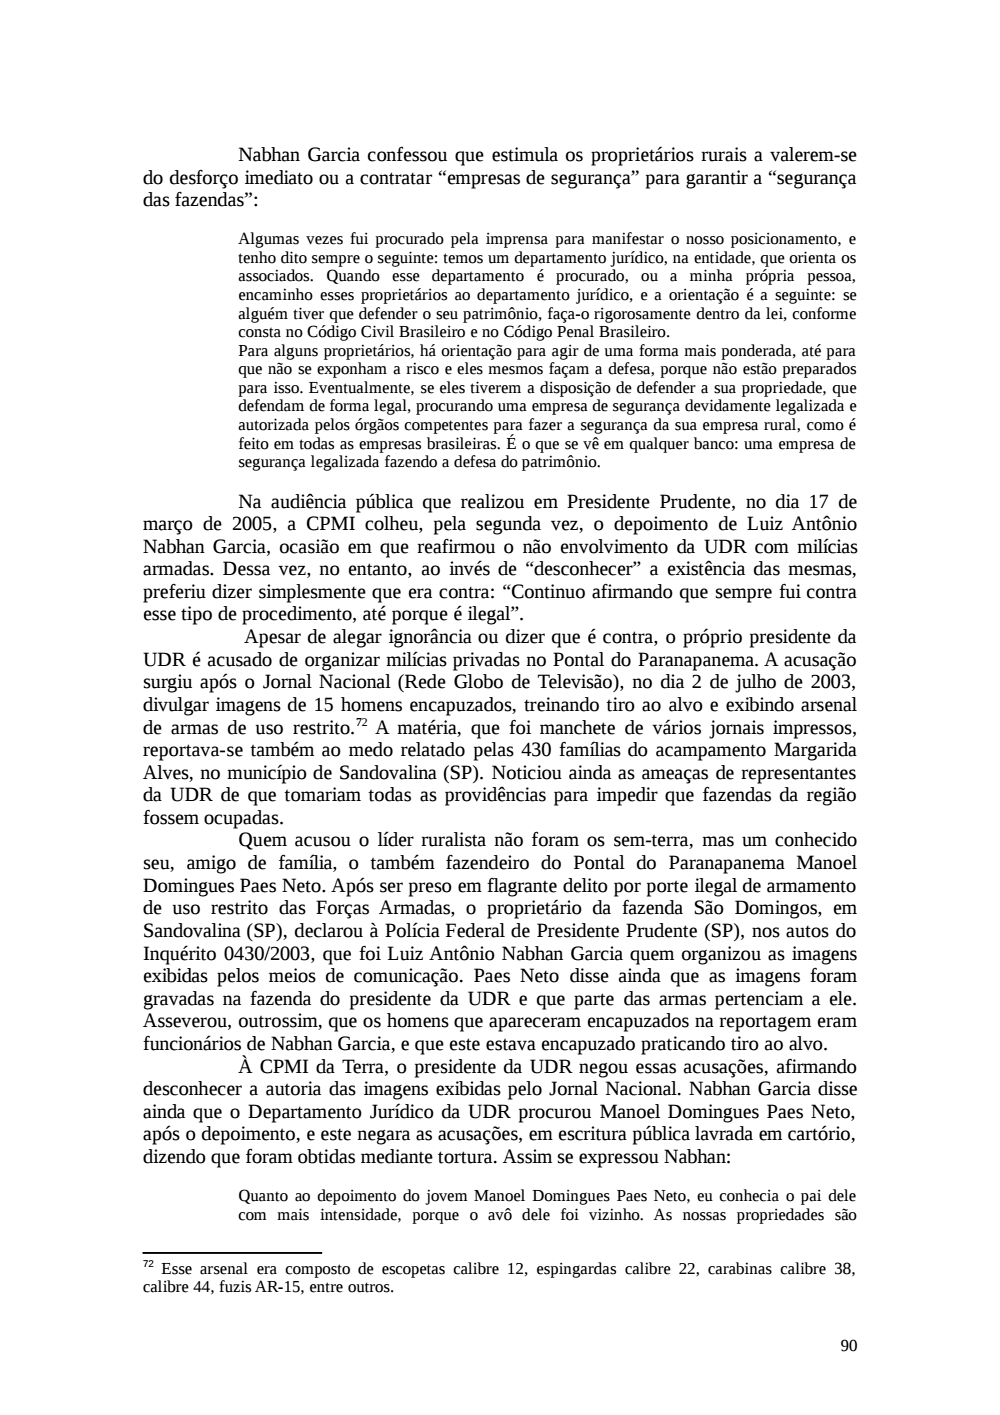 Page 90 from Relatório final da comissão